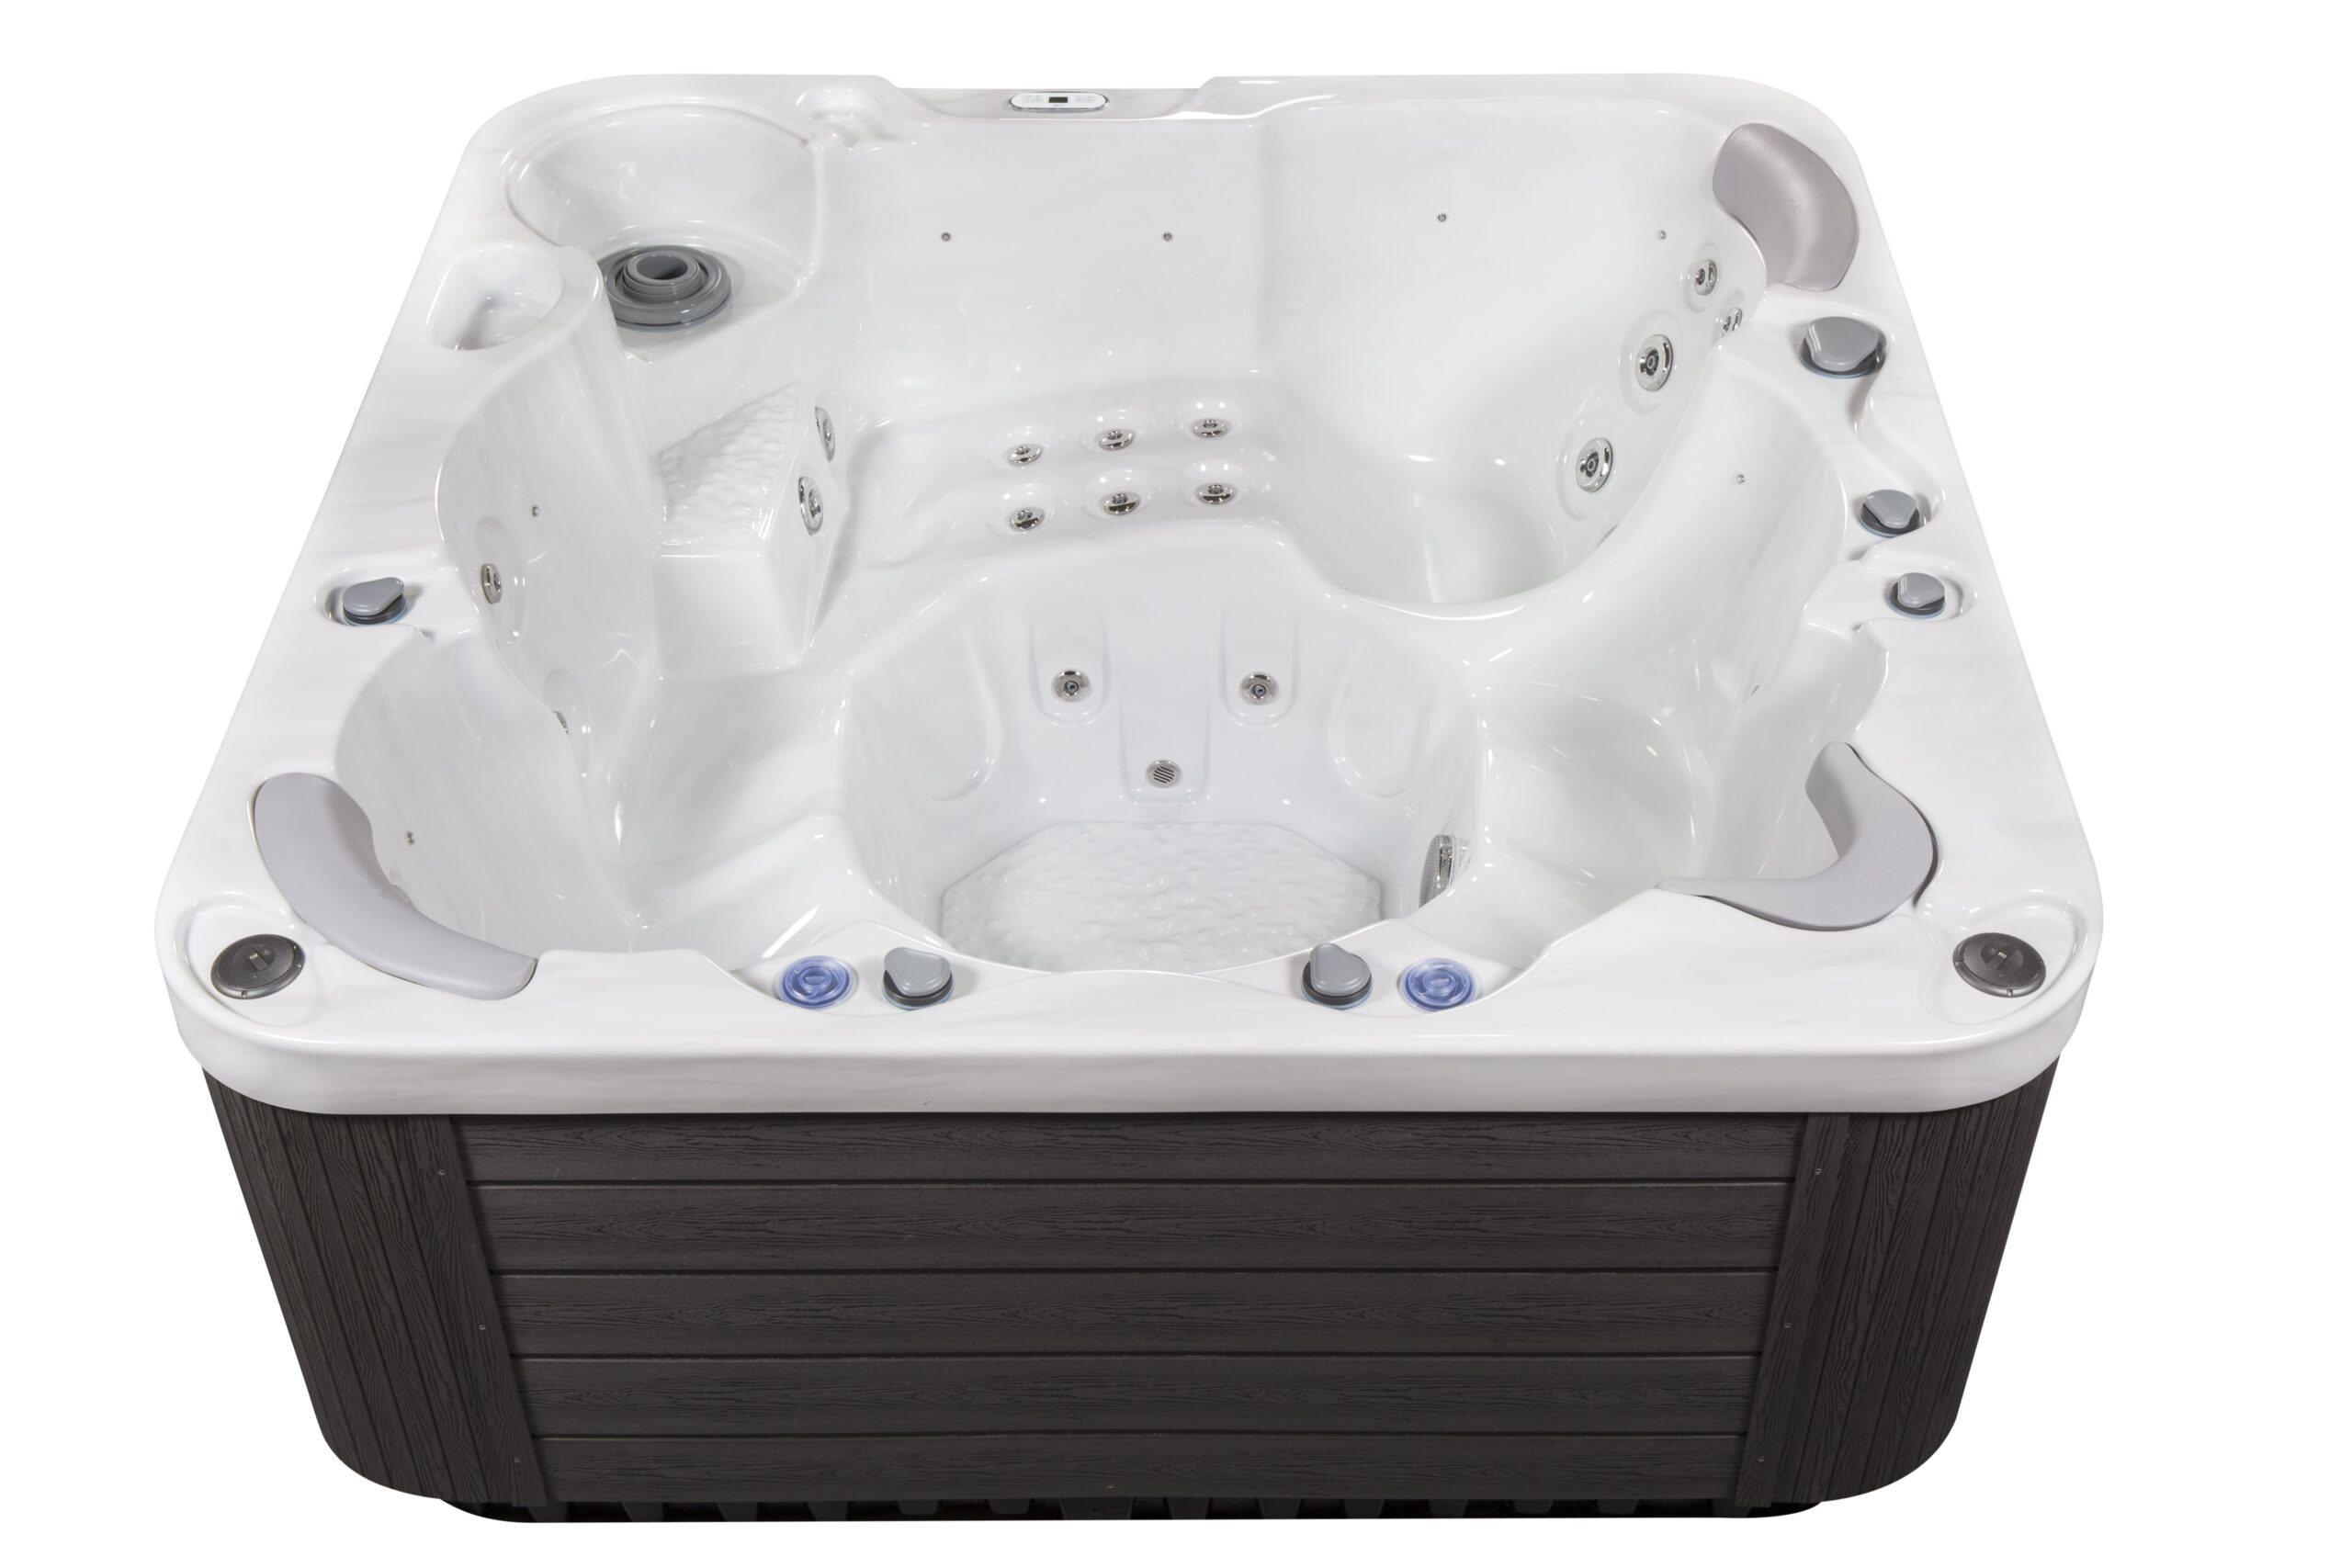 Luxury large hot tub